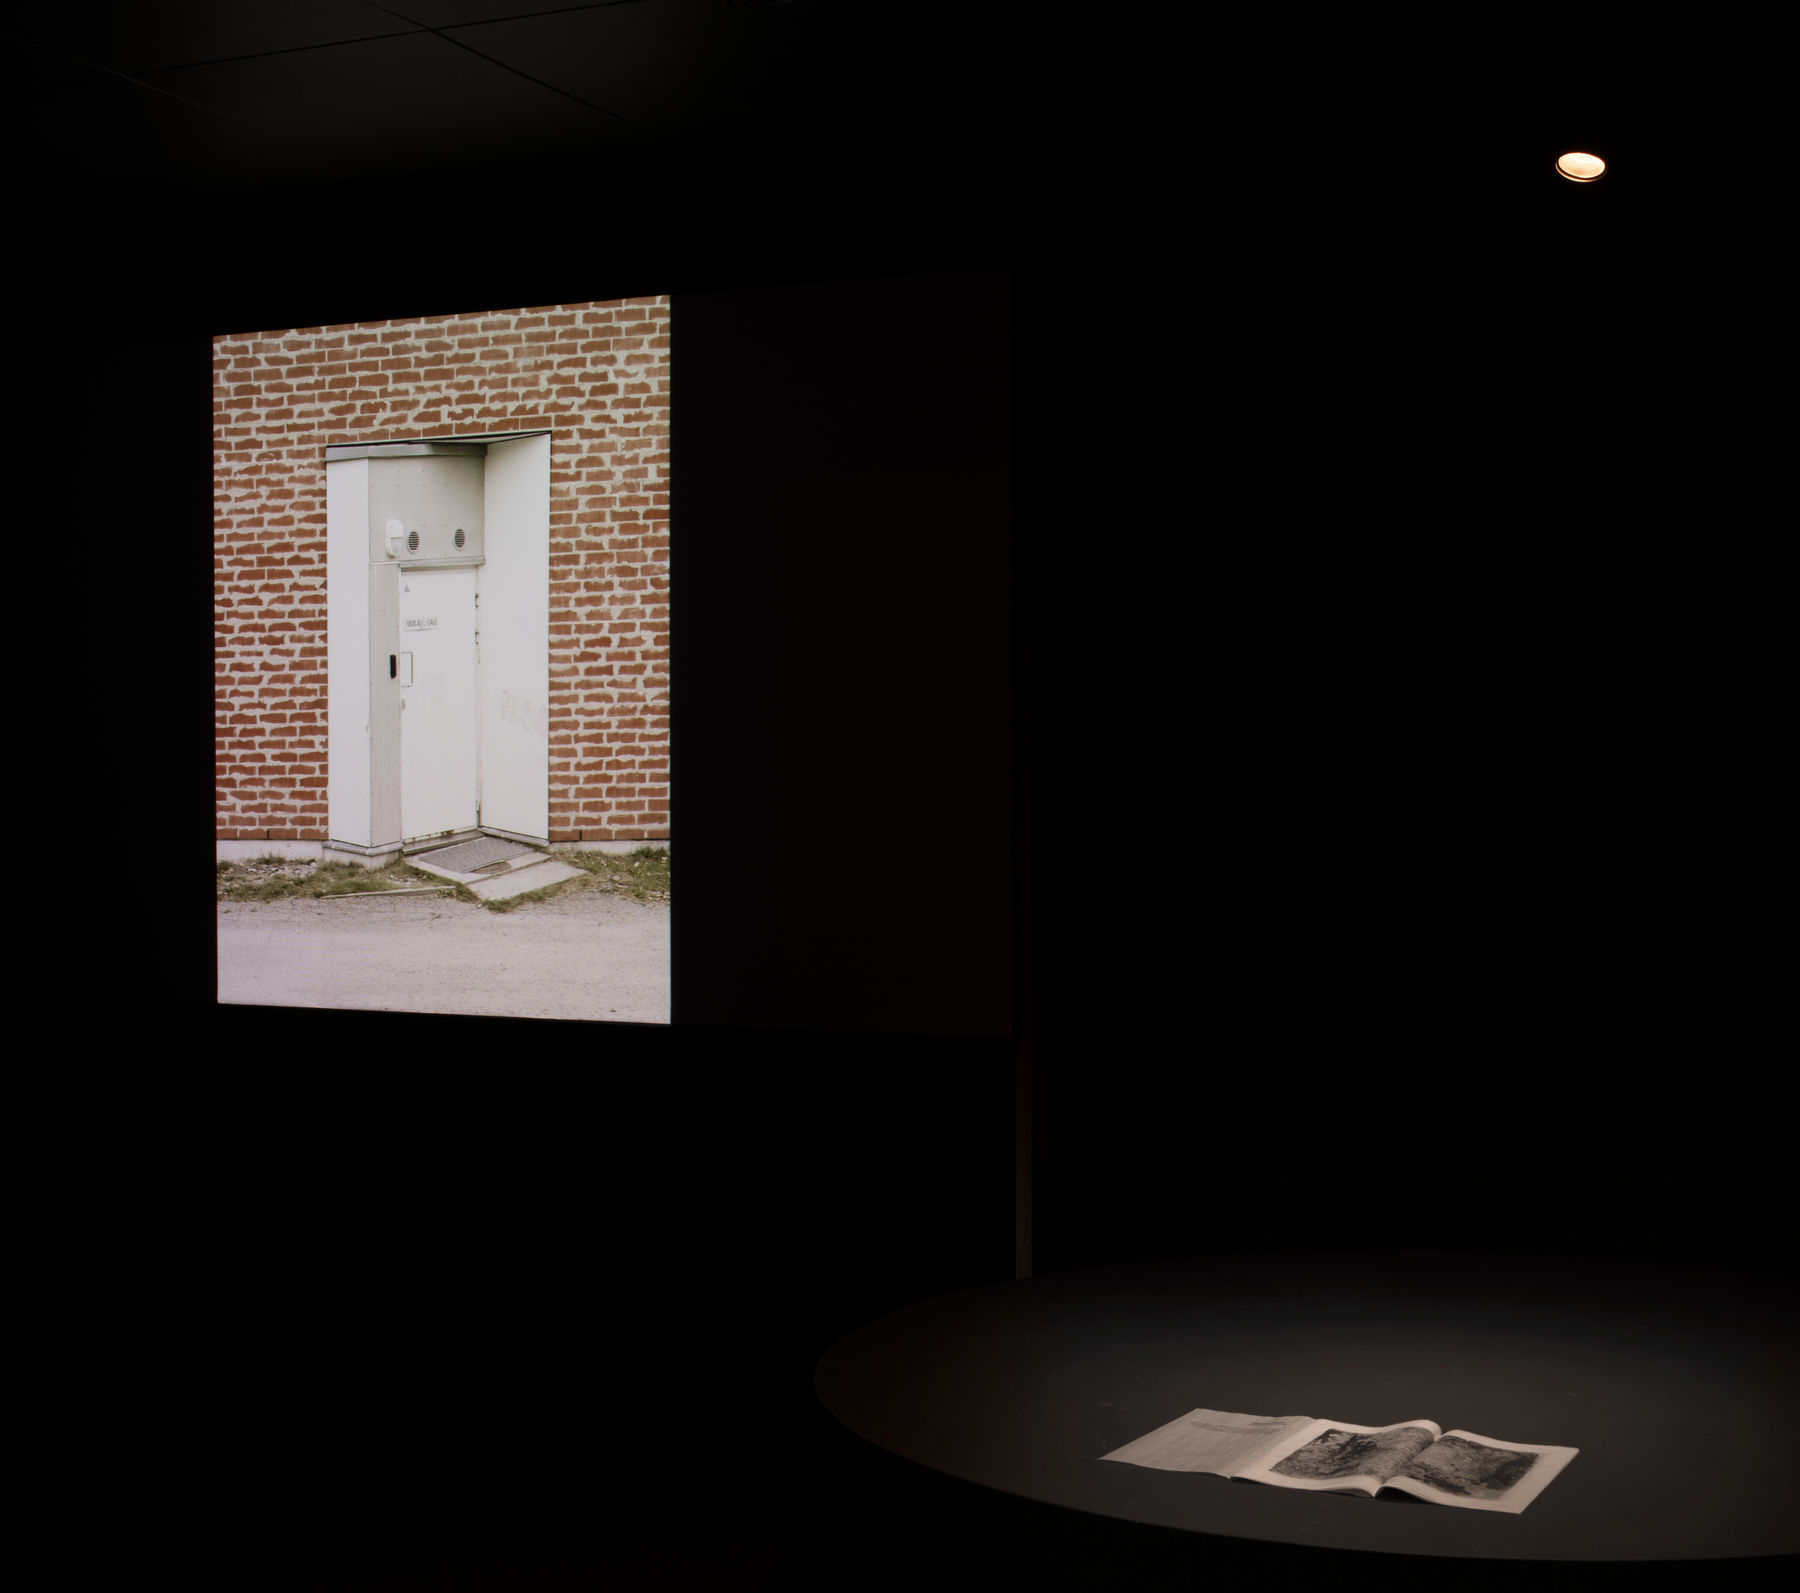 04. Wonder(ful) Exhibition-Image by Anne Kinnunen 2022